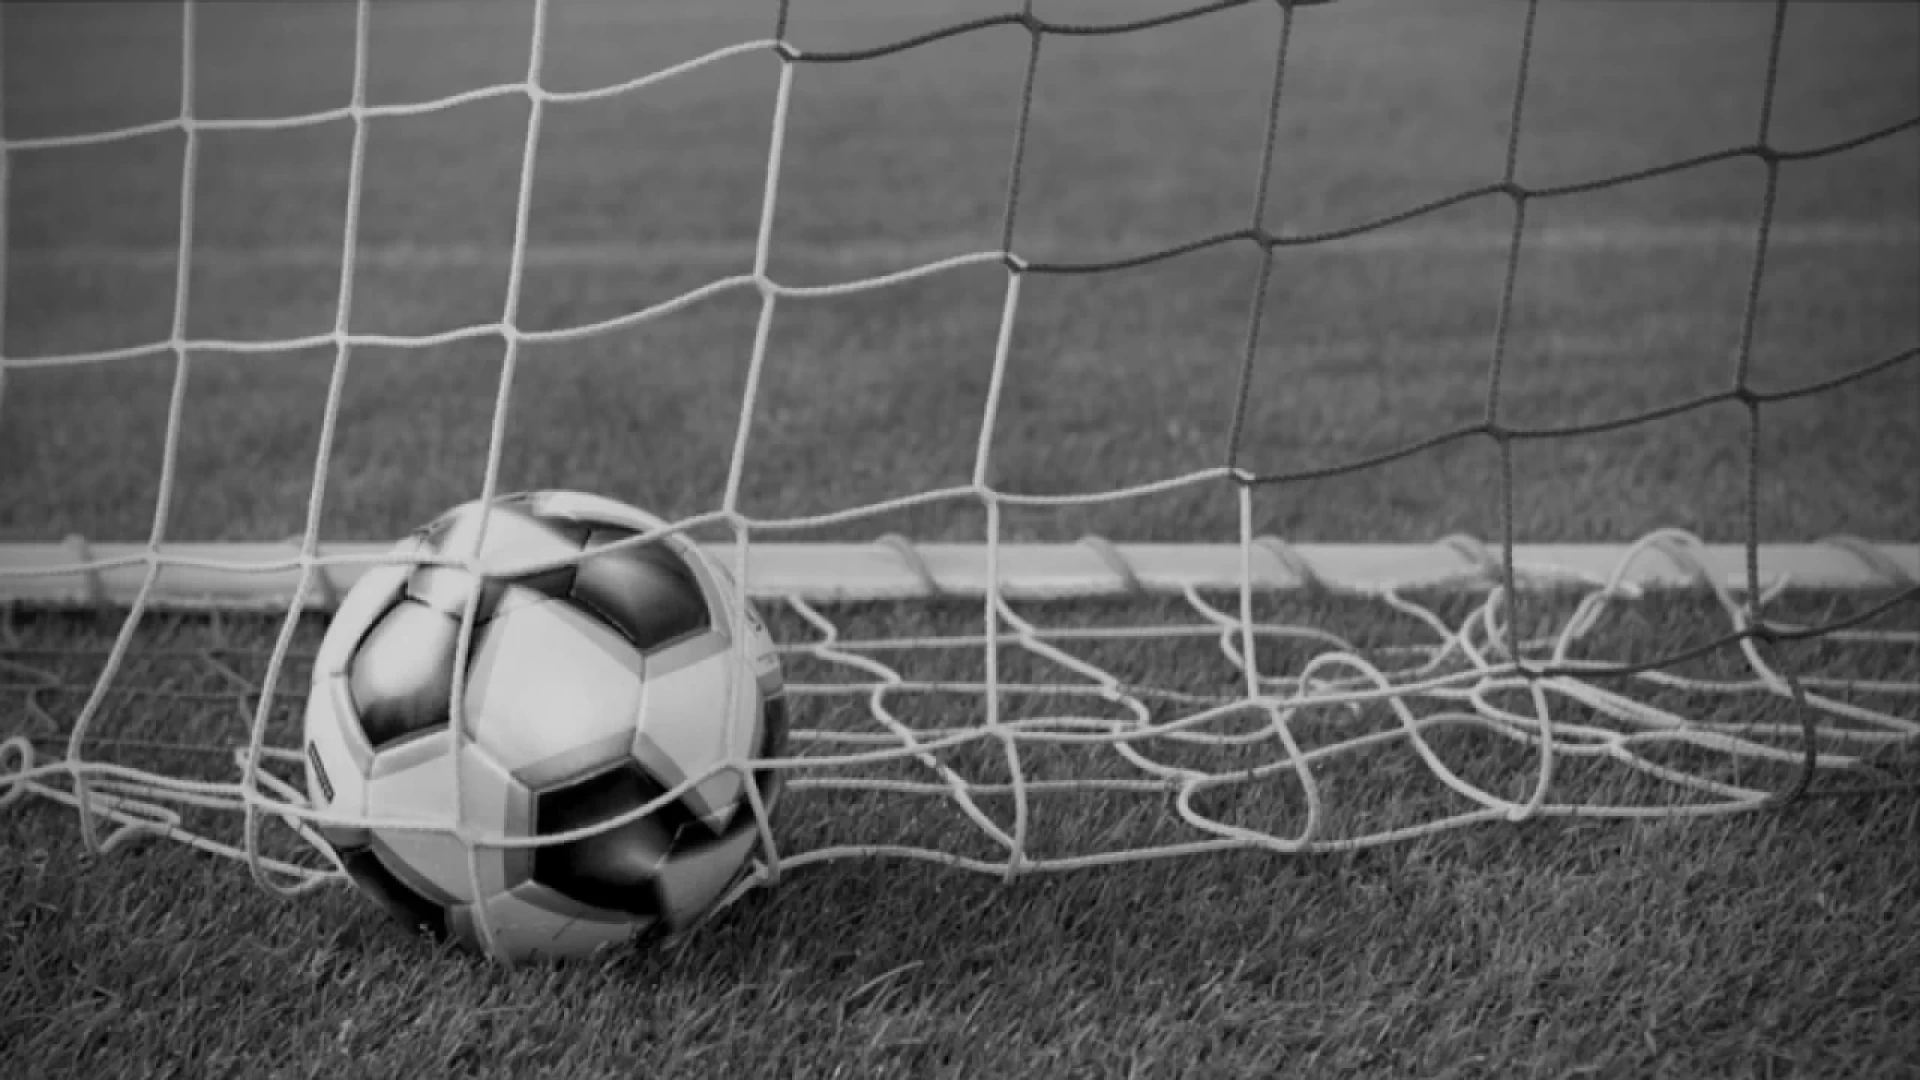 Serie D girone f, Eccellenza, Promozione e Prima categoria girone A: Le gare in programma nel fine settimana sportivo